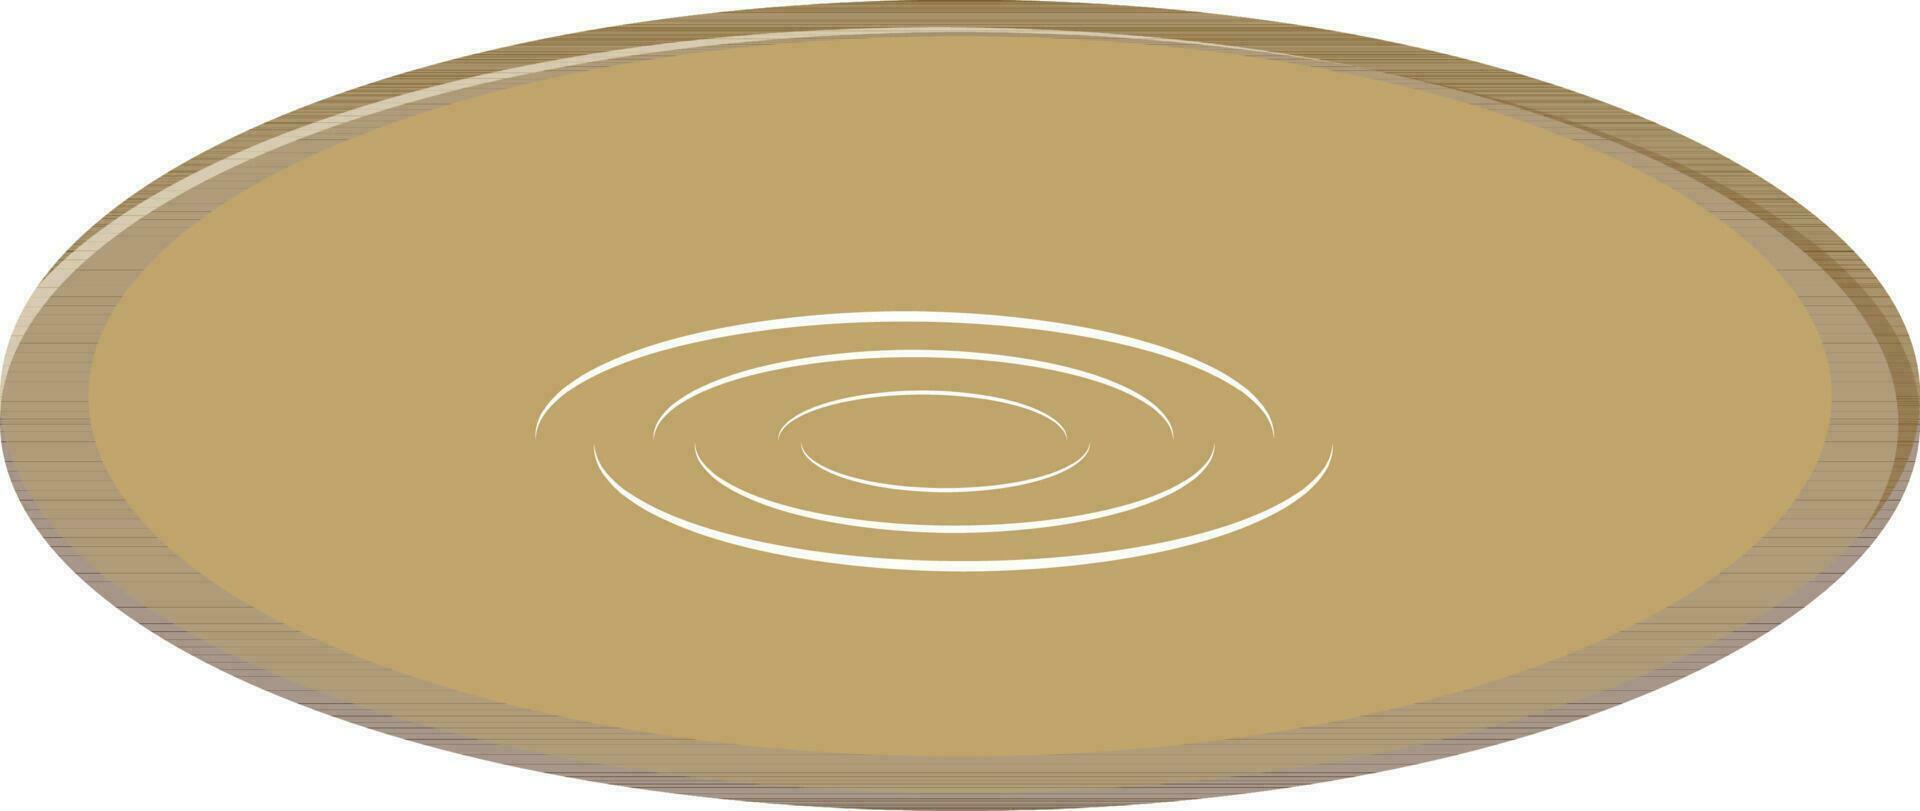 frisbee schijf in bruin kleur. vector